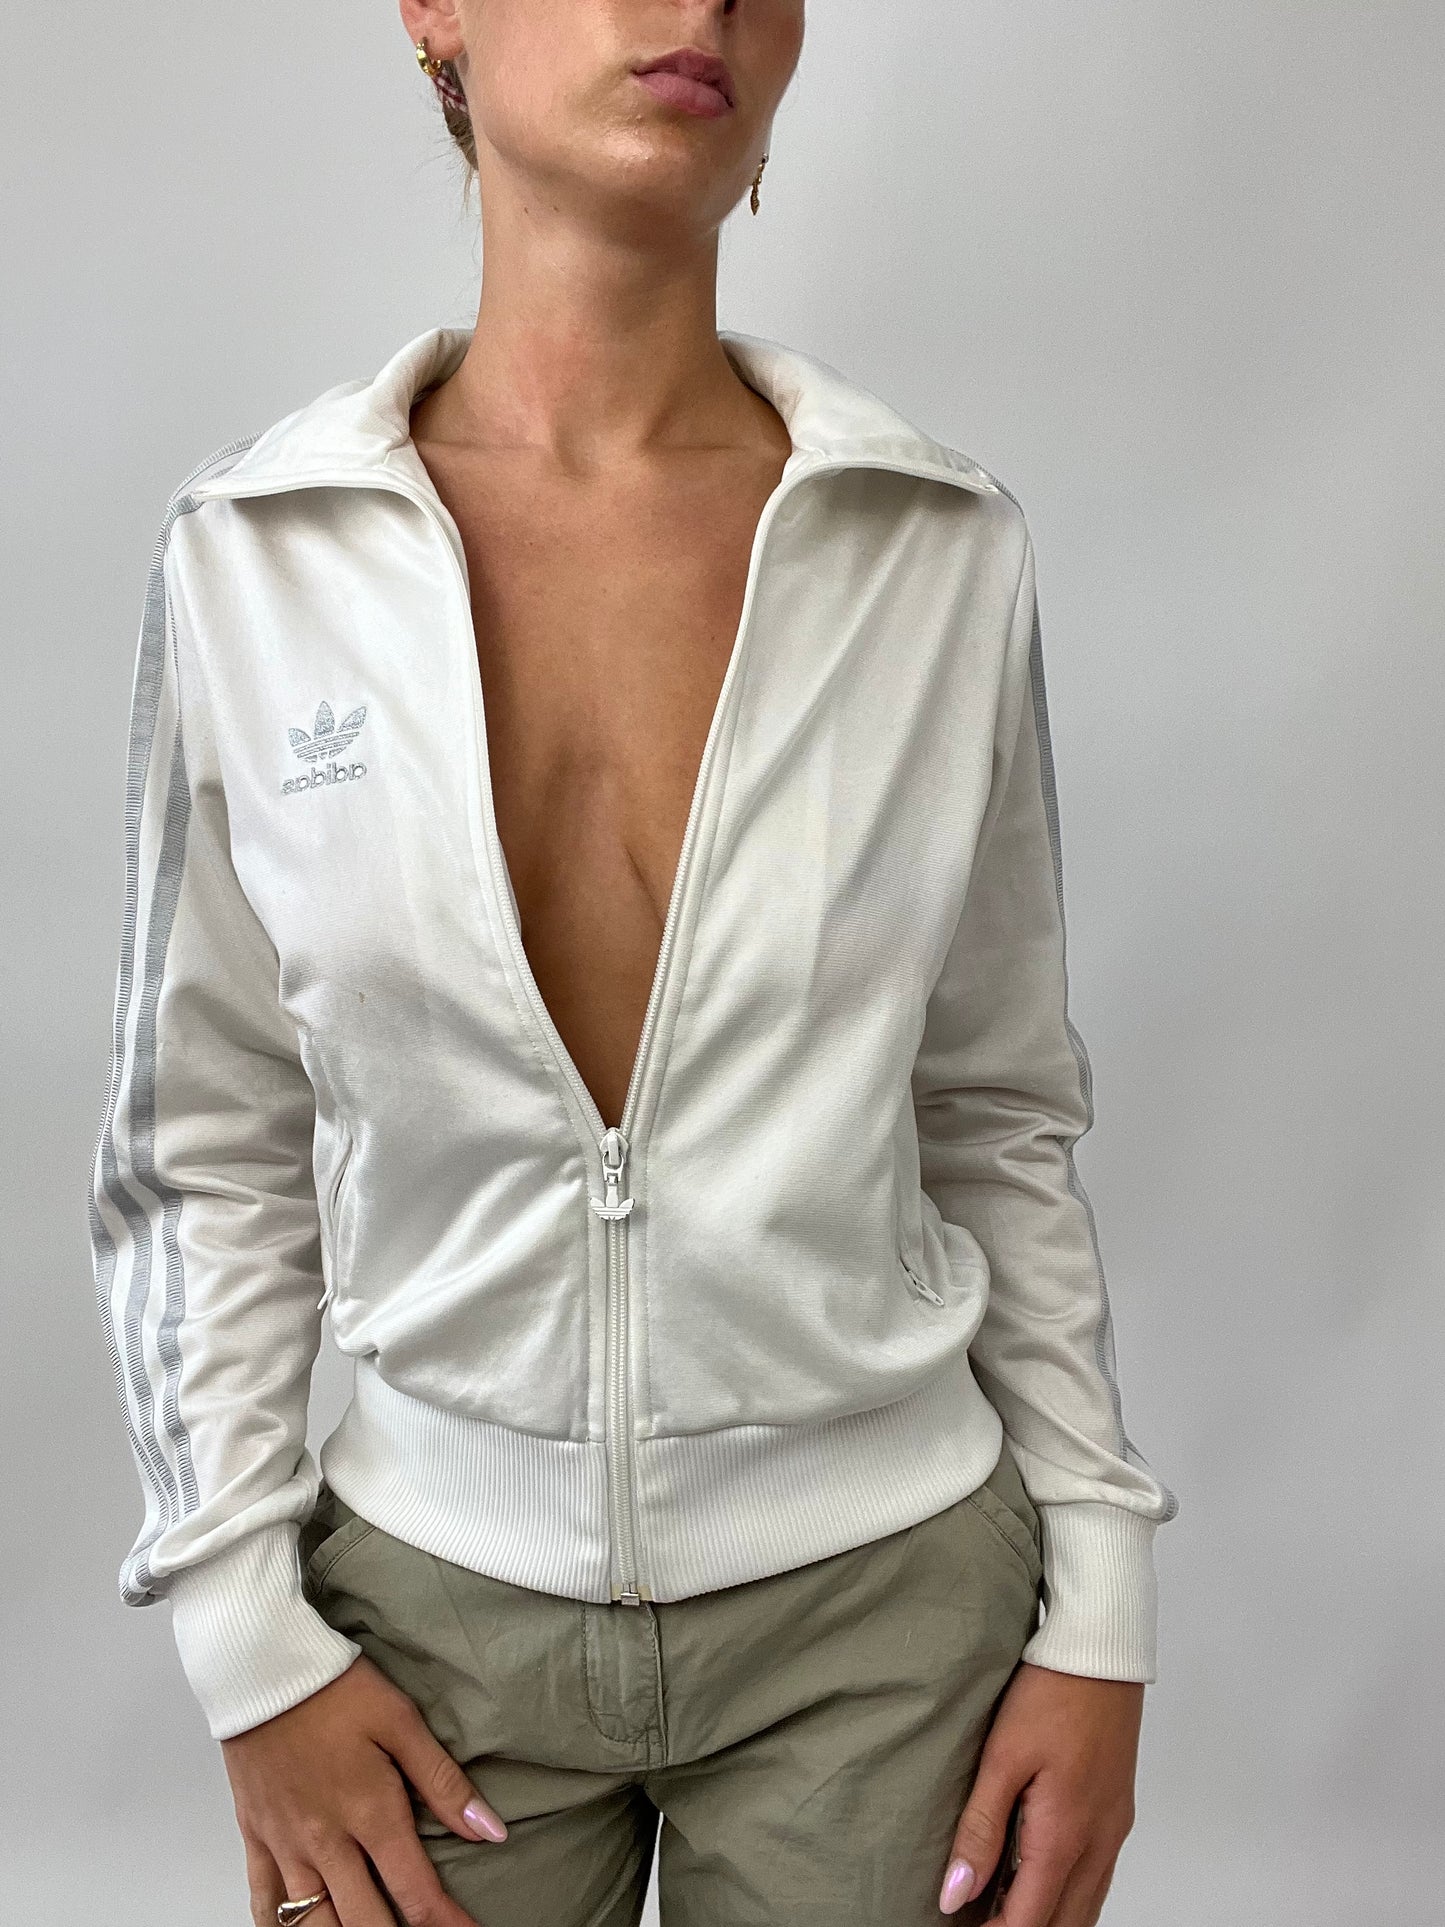 PUB GARDEN DROP | medium white adidas zip up jacket